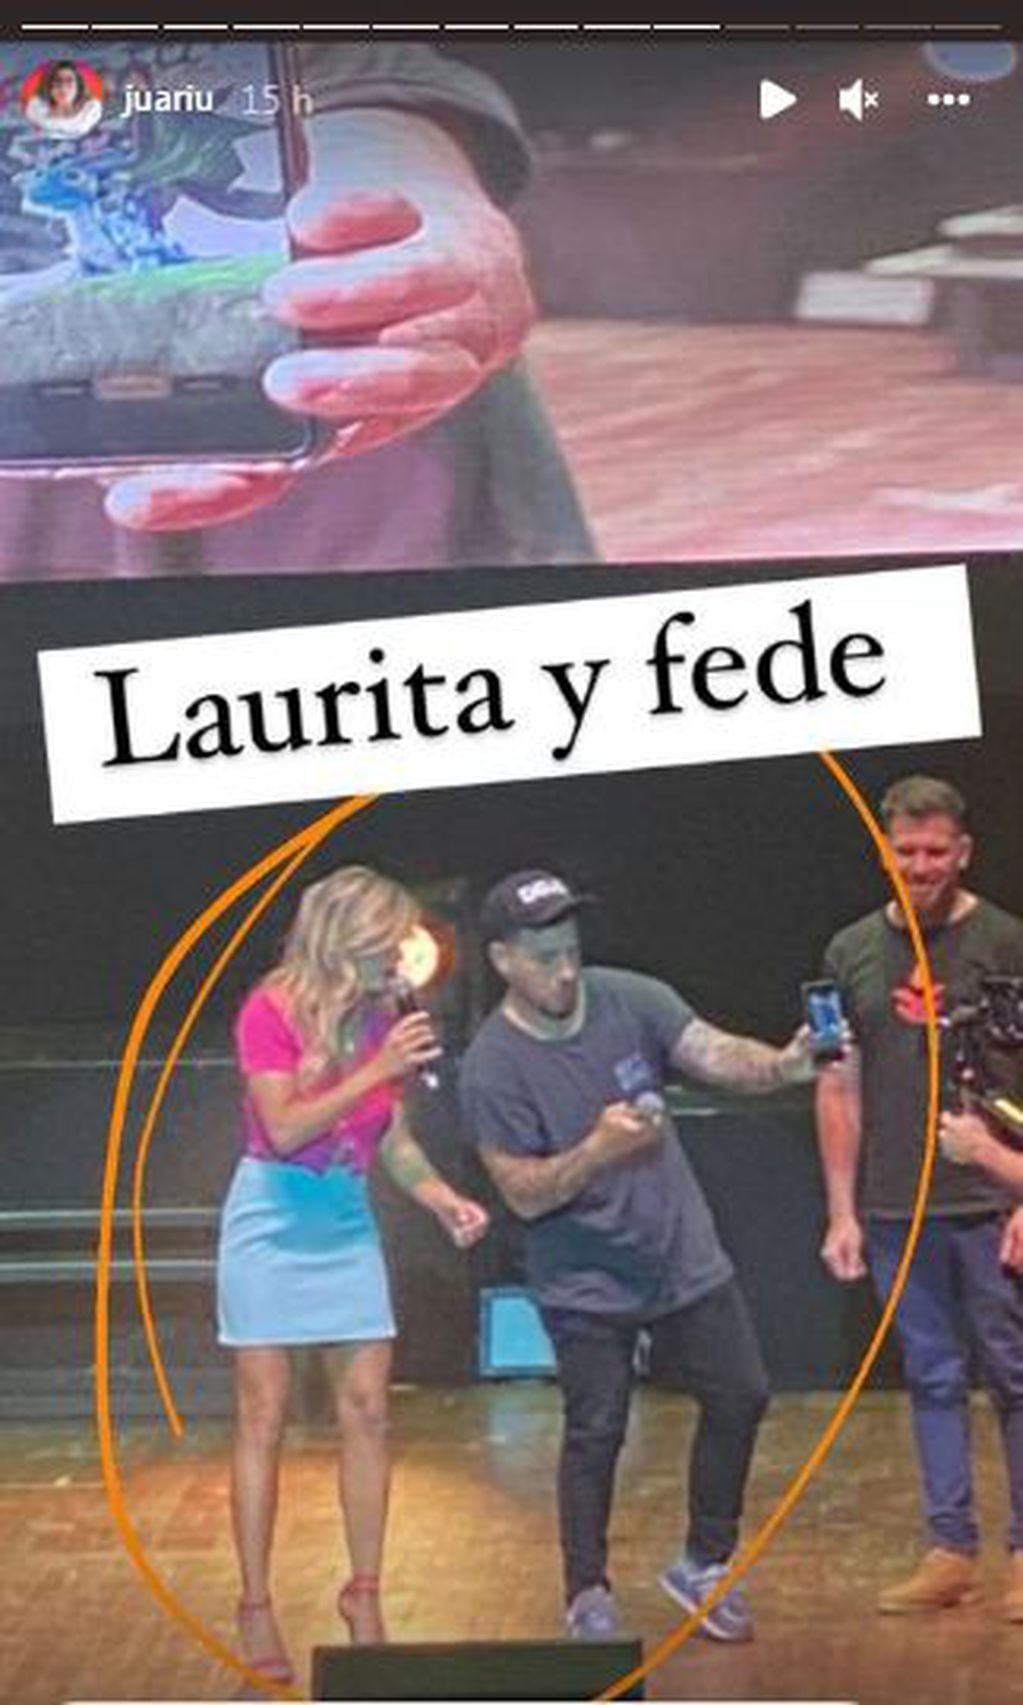 Laurita Fernández y Fede Bal se reencontraron en un escenario (Instagram de Juariu)